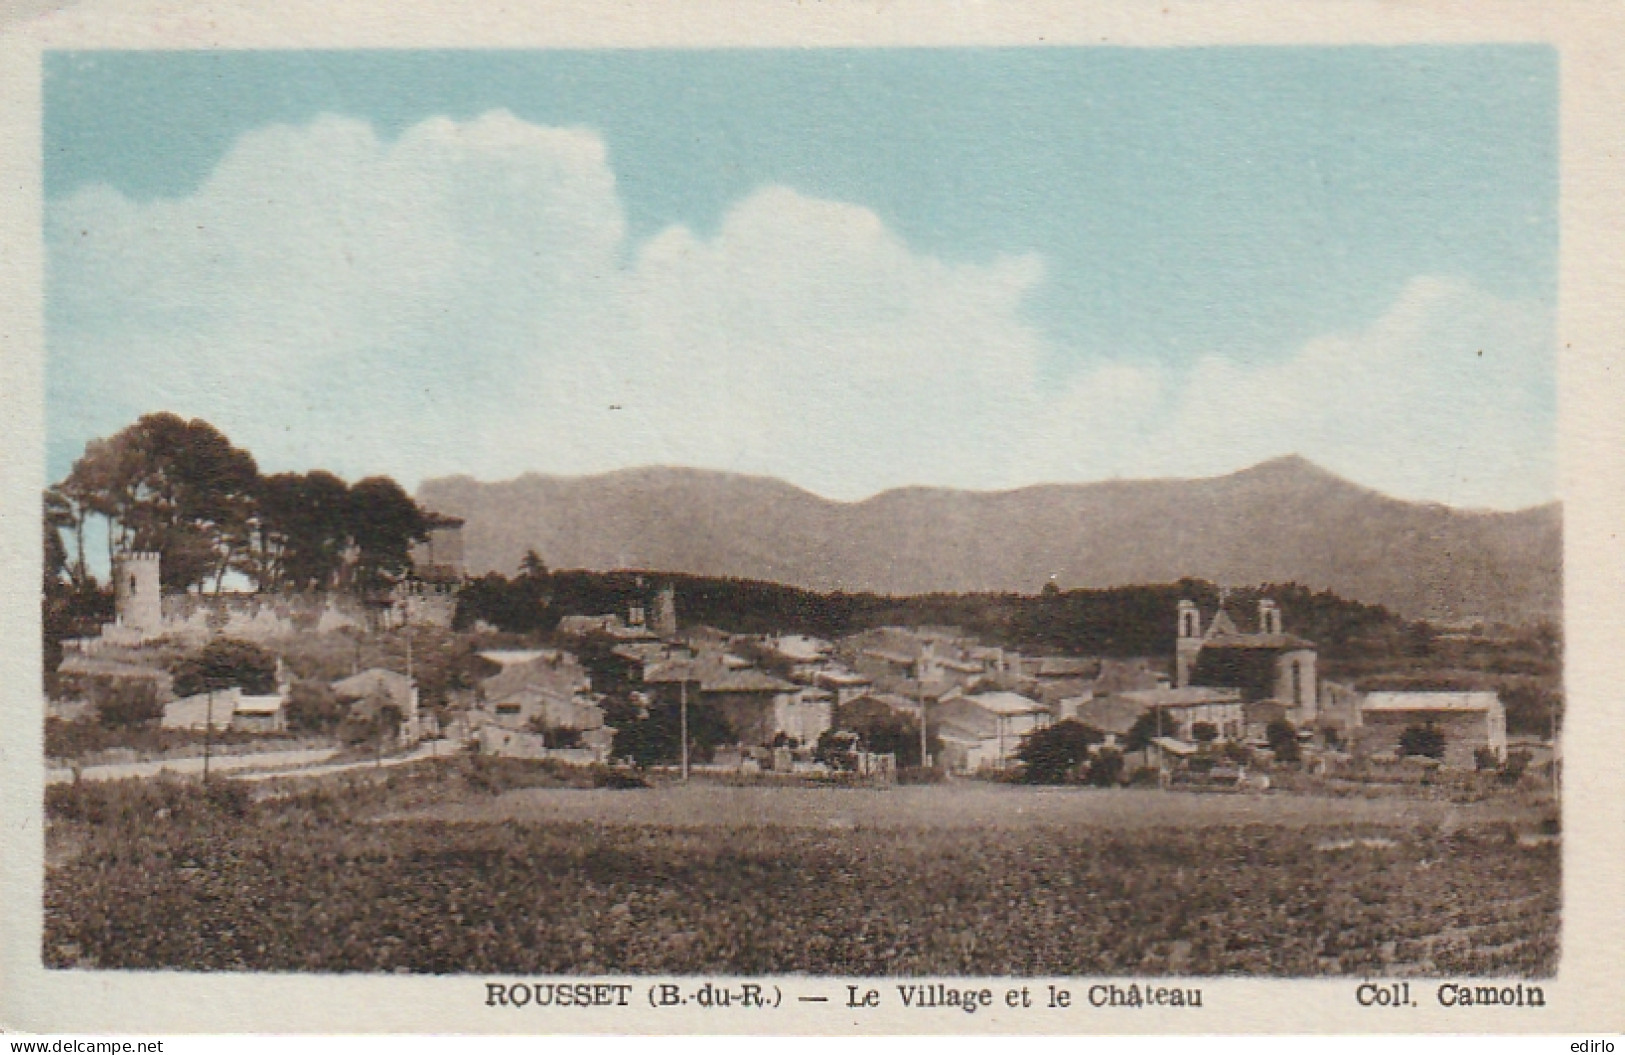  ***  13  ****   ROUSSET  Le Village Et Le Château - Timbrée 1951 TTBE  - Rousset